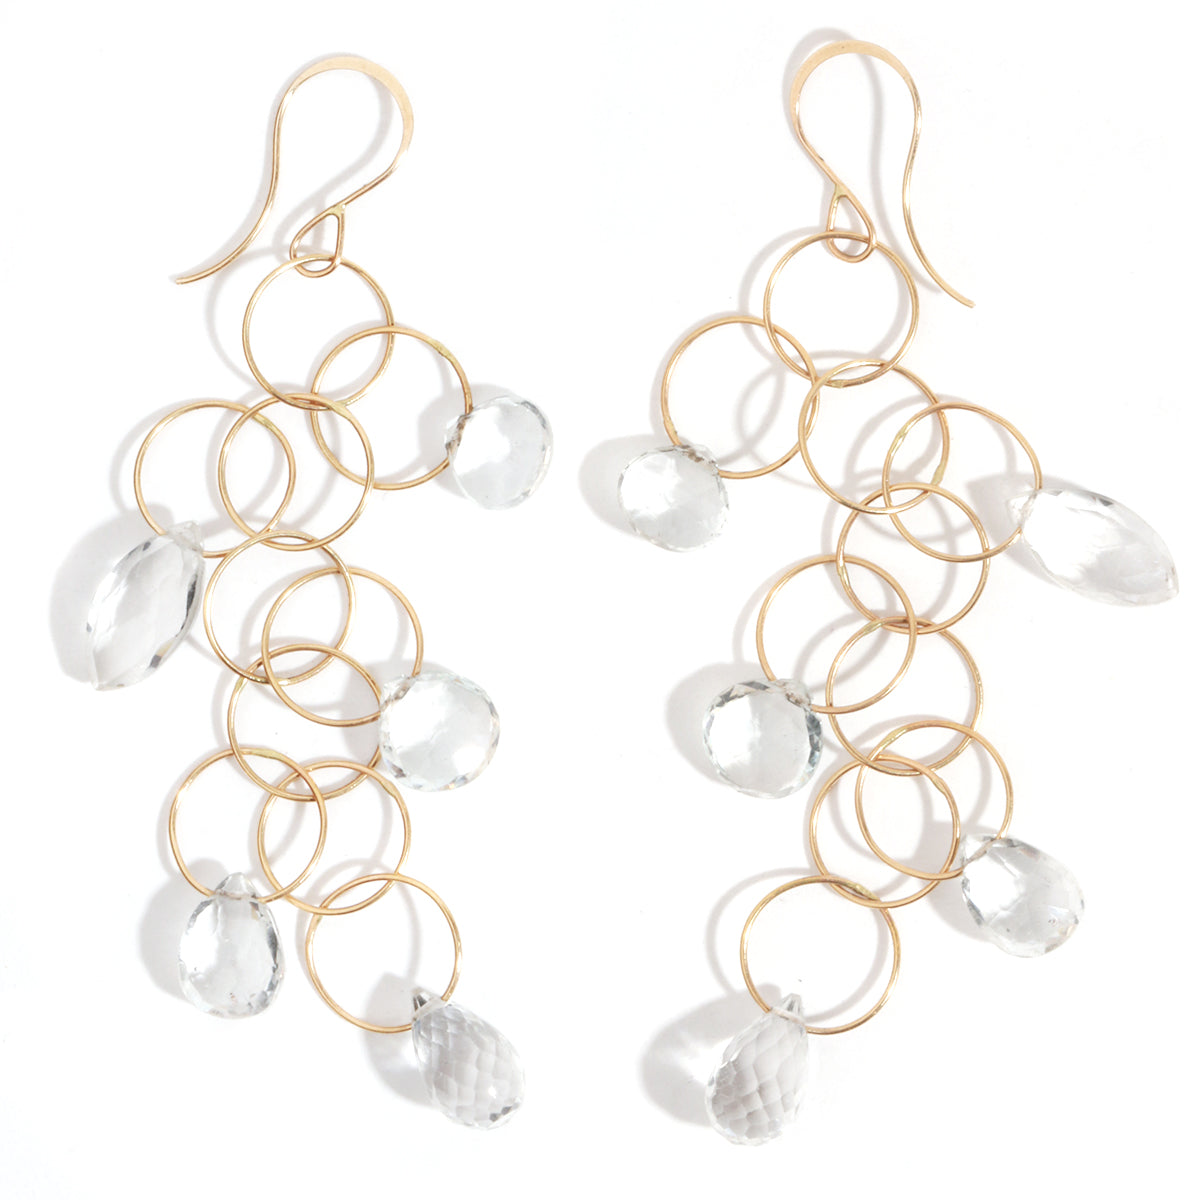 5 drop white topaz earrings - Melissa Joy Manning Jewelry